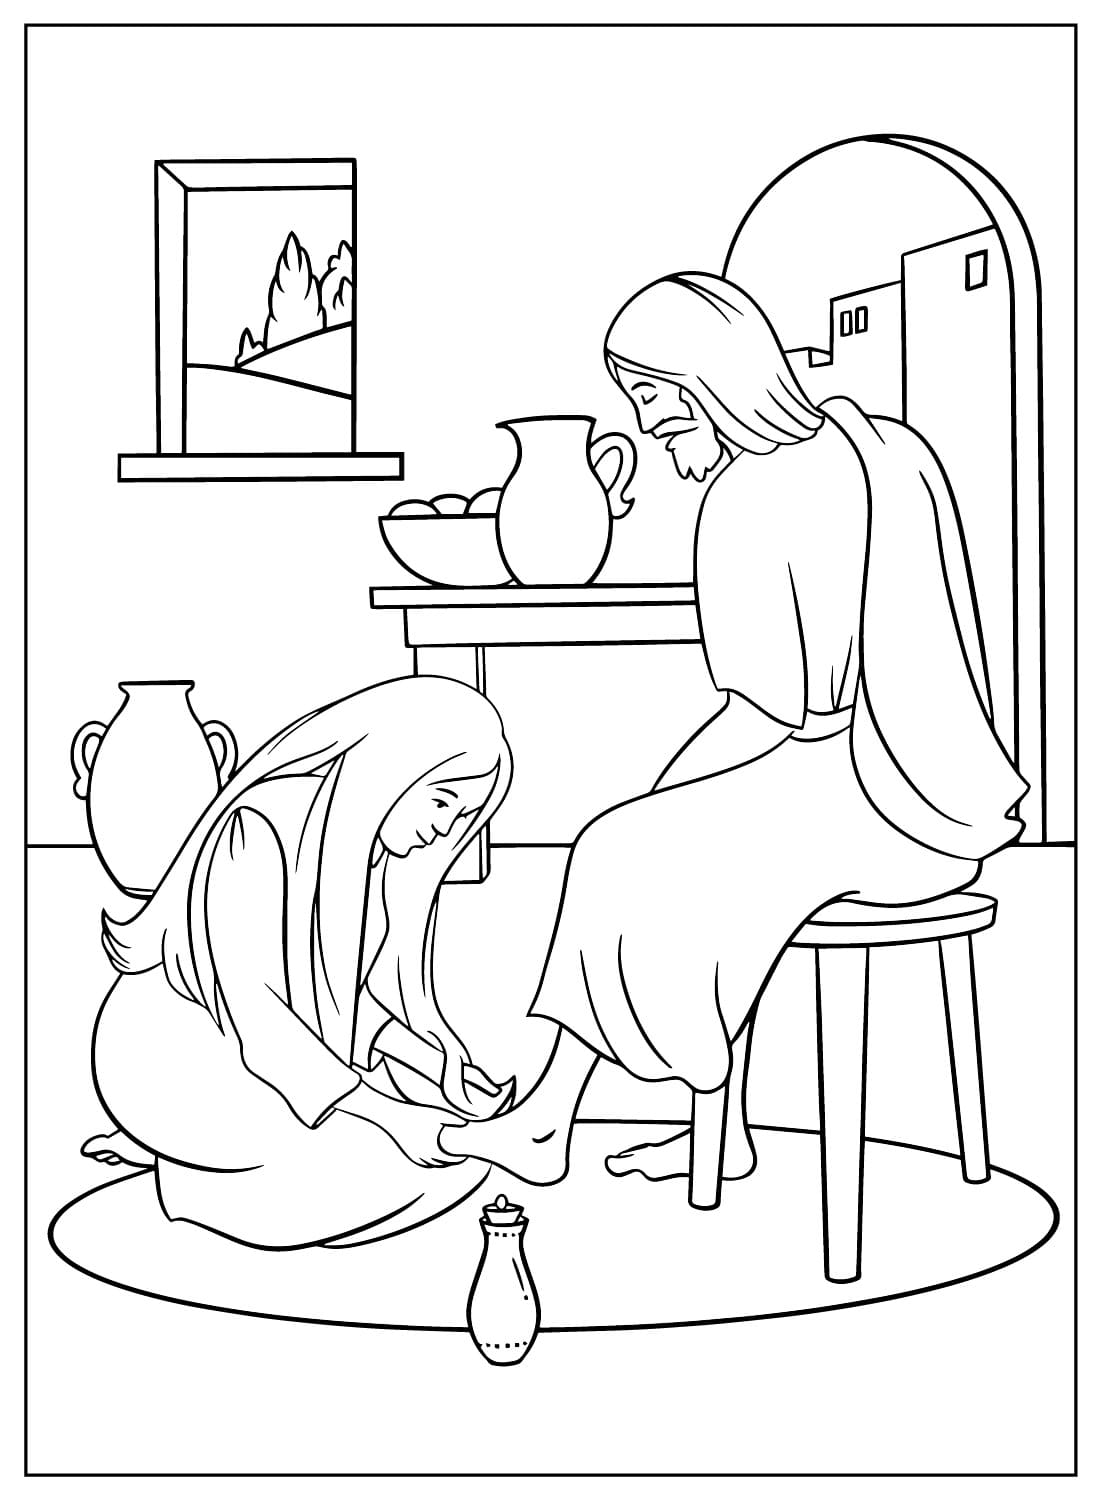 Мария облила маслом голову и ноги Иисуса